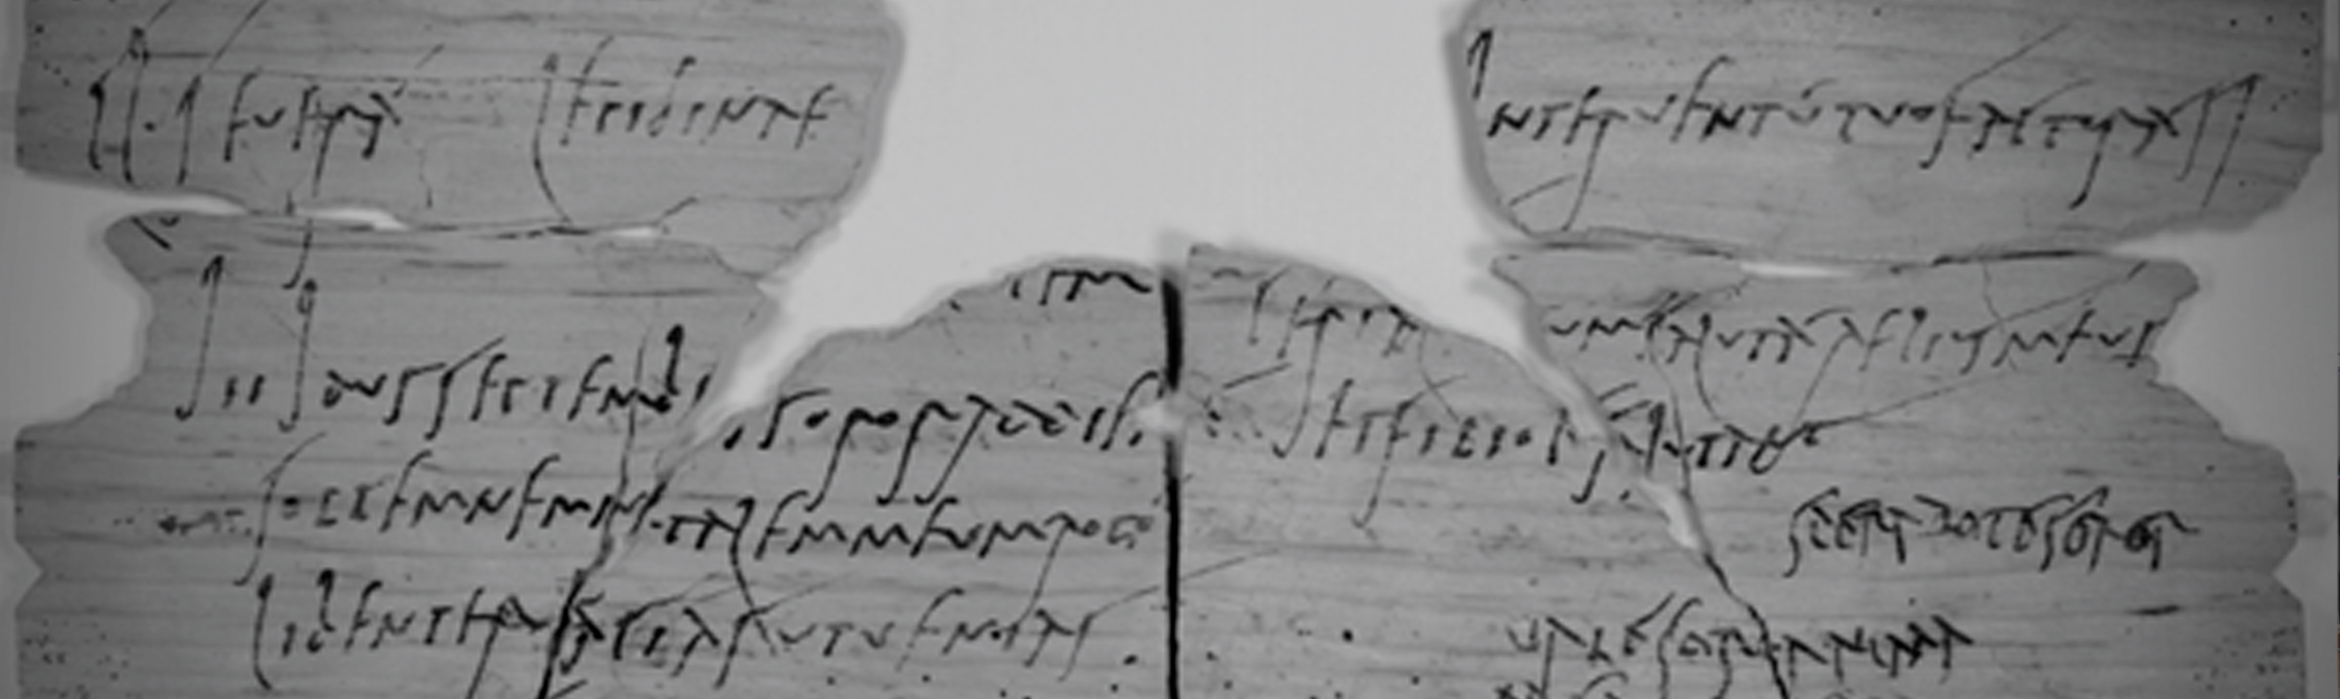 Tabla de madera con una invitación de cumpleaños de Sulpicia Lepidina escrita en Latín